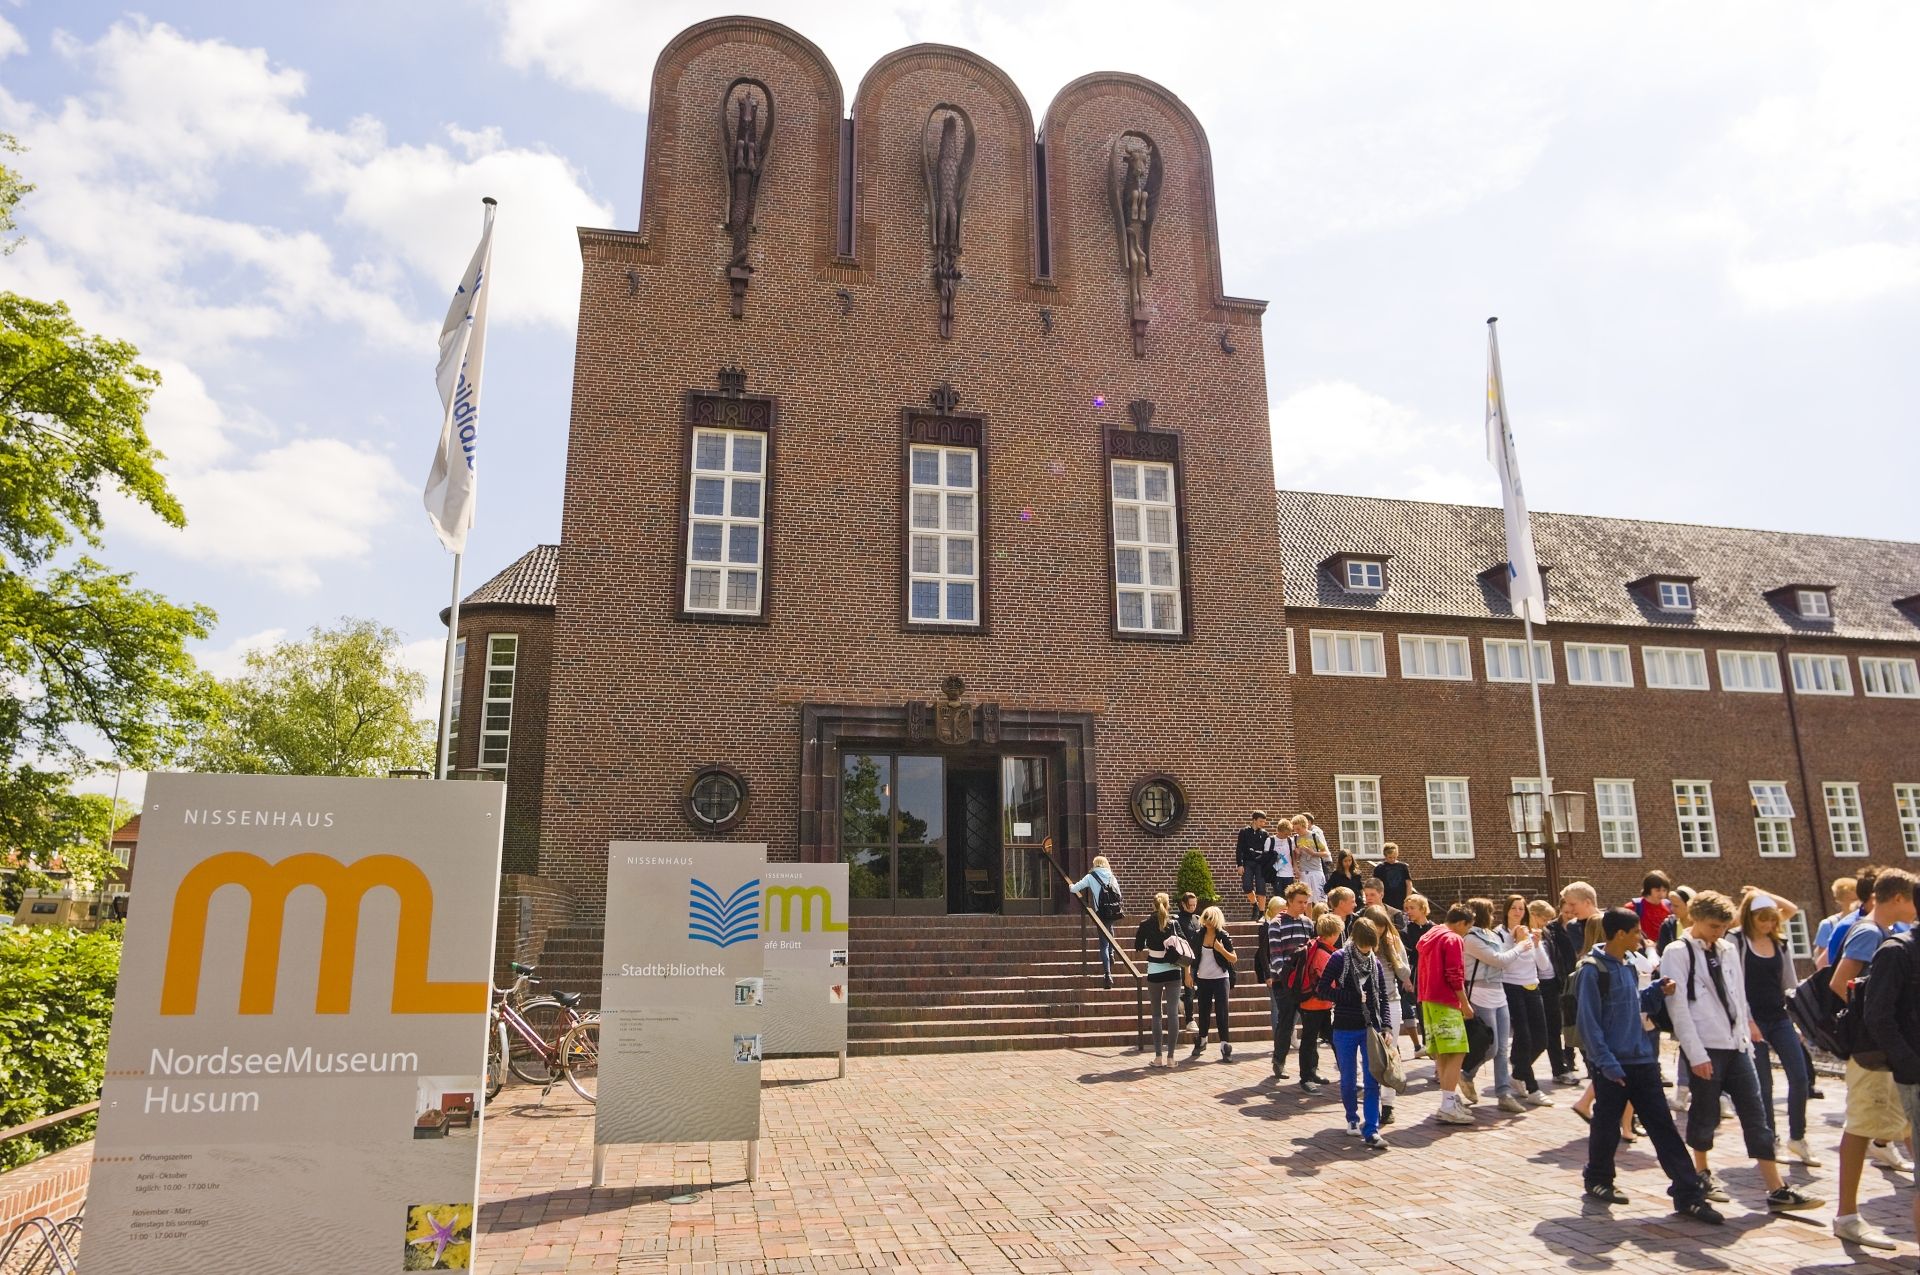 Das NordseeMuseum in Husum ist das zentrale Museum für den Kreis Nordfriesland und die Stadt Husum